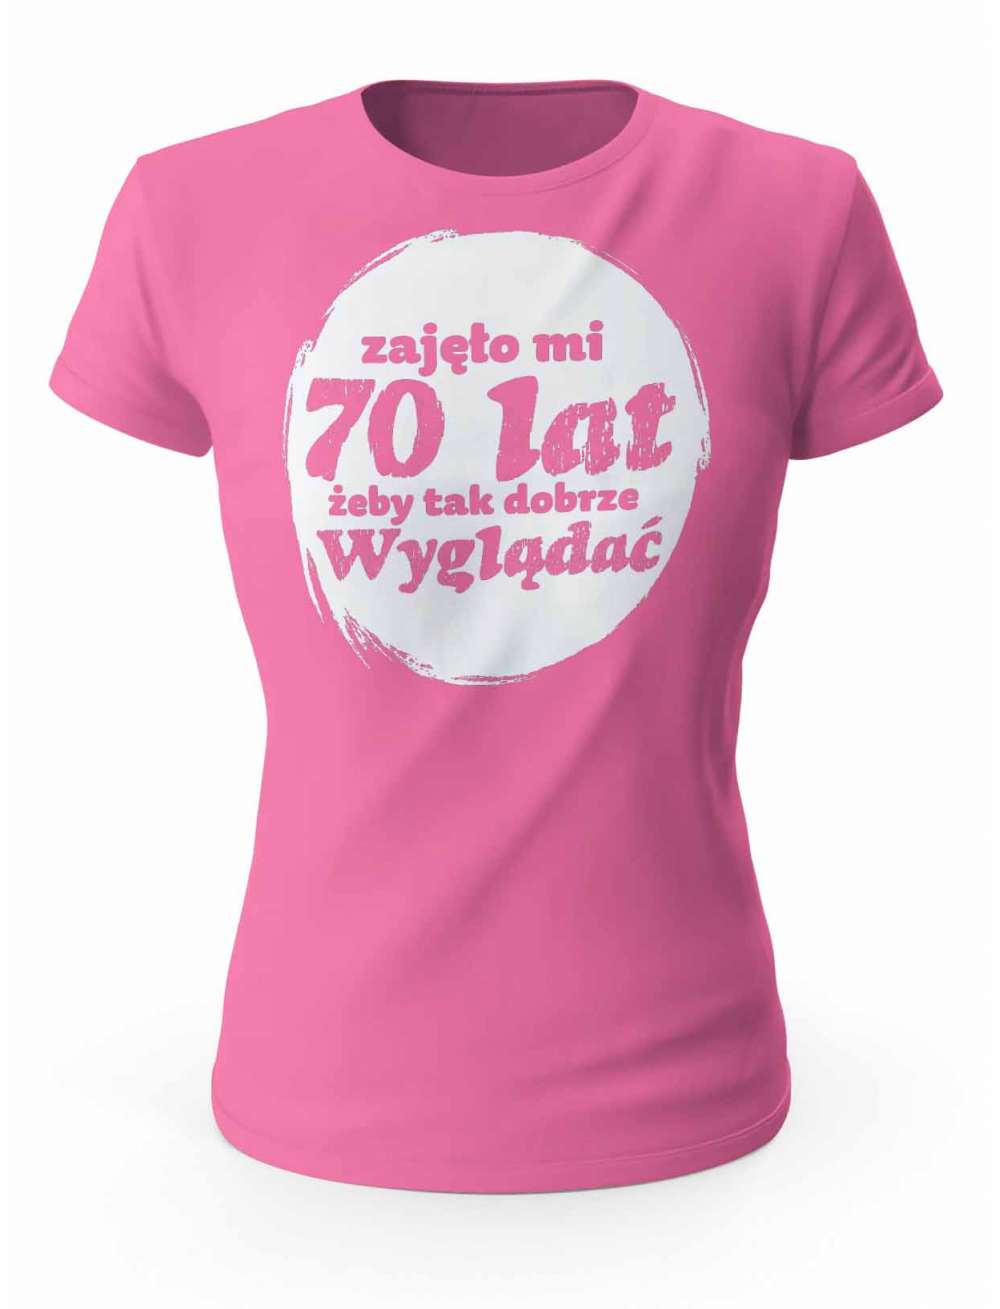 Koszulka Zajęło Mi 70 Lat Żeby Tak Wyglądać, T-shirt Dla Kobiety